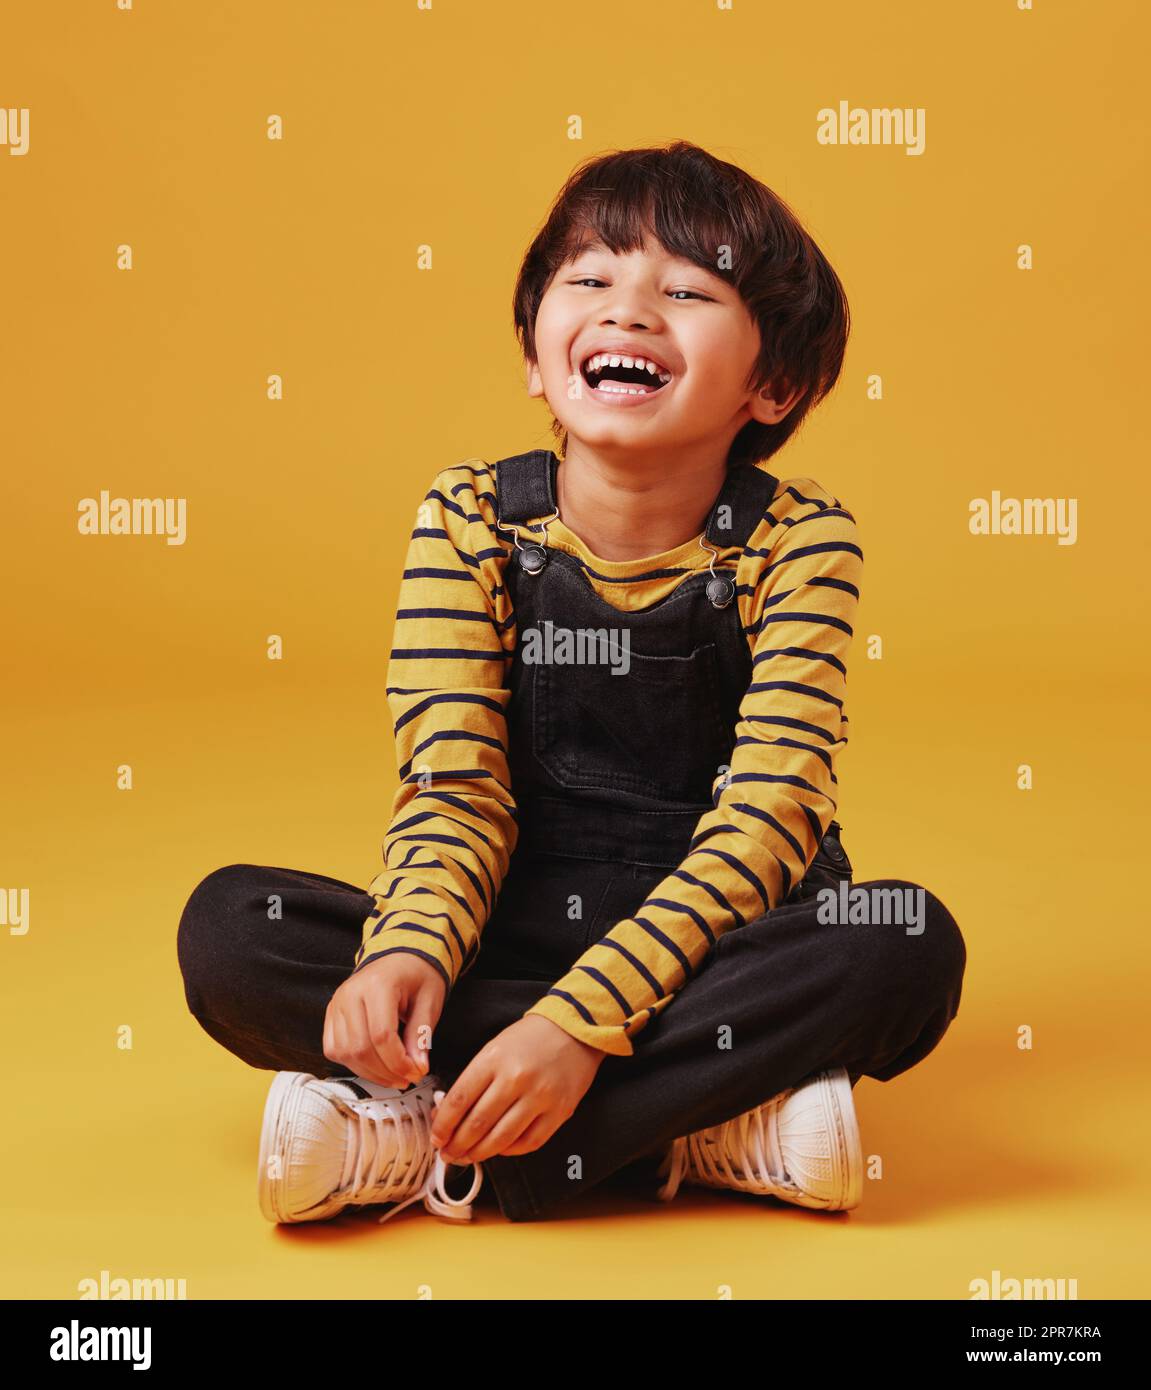 Ein süßer kleiner asiatischer Junge, der mit lässiger Kleidung auf dem Boden sitzt, während er lacht und seine Beine vor einem orangefarbenen Hintergrund kreuzt. Süßer, glücklicher kleiner Junge, sicher und allein Stockfoto